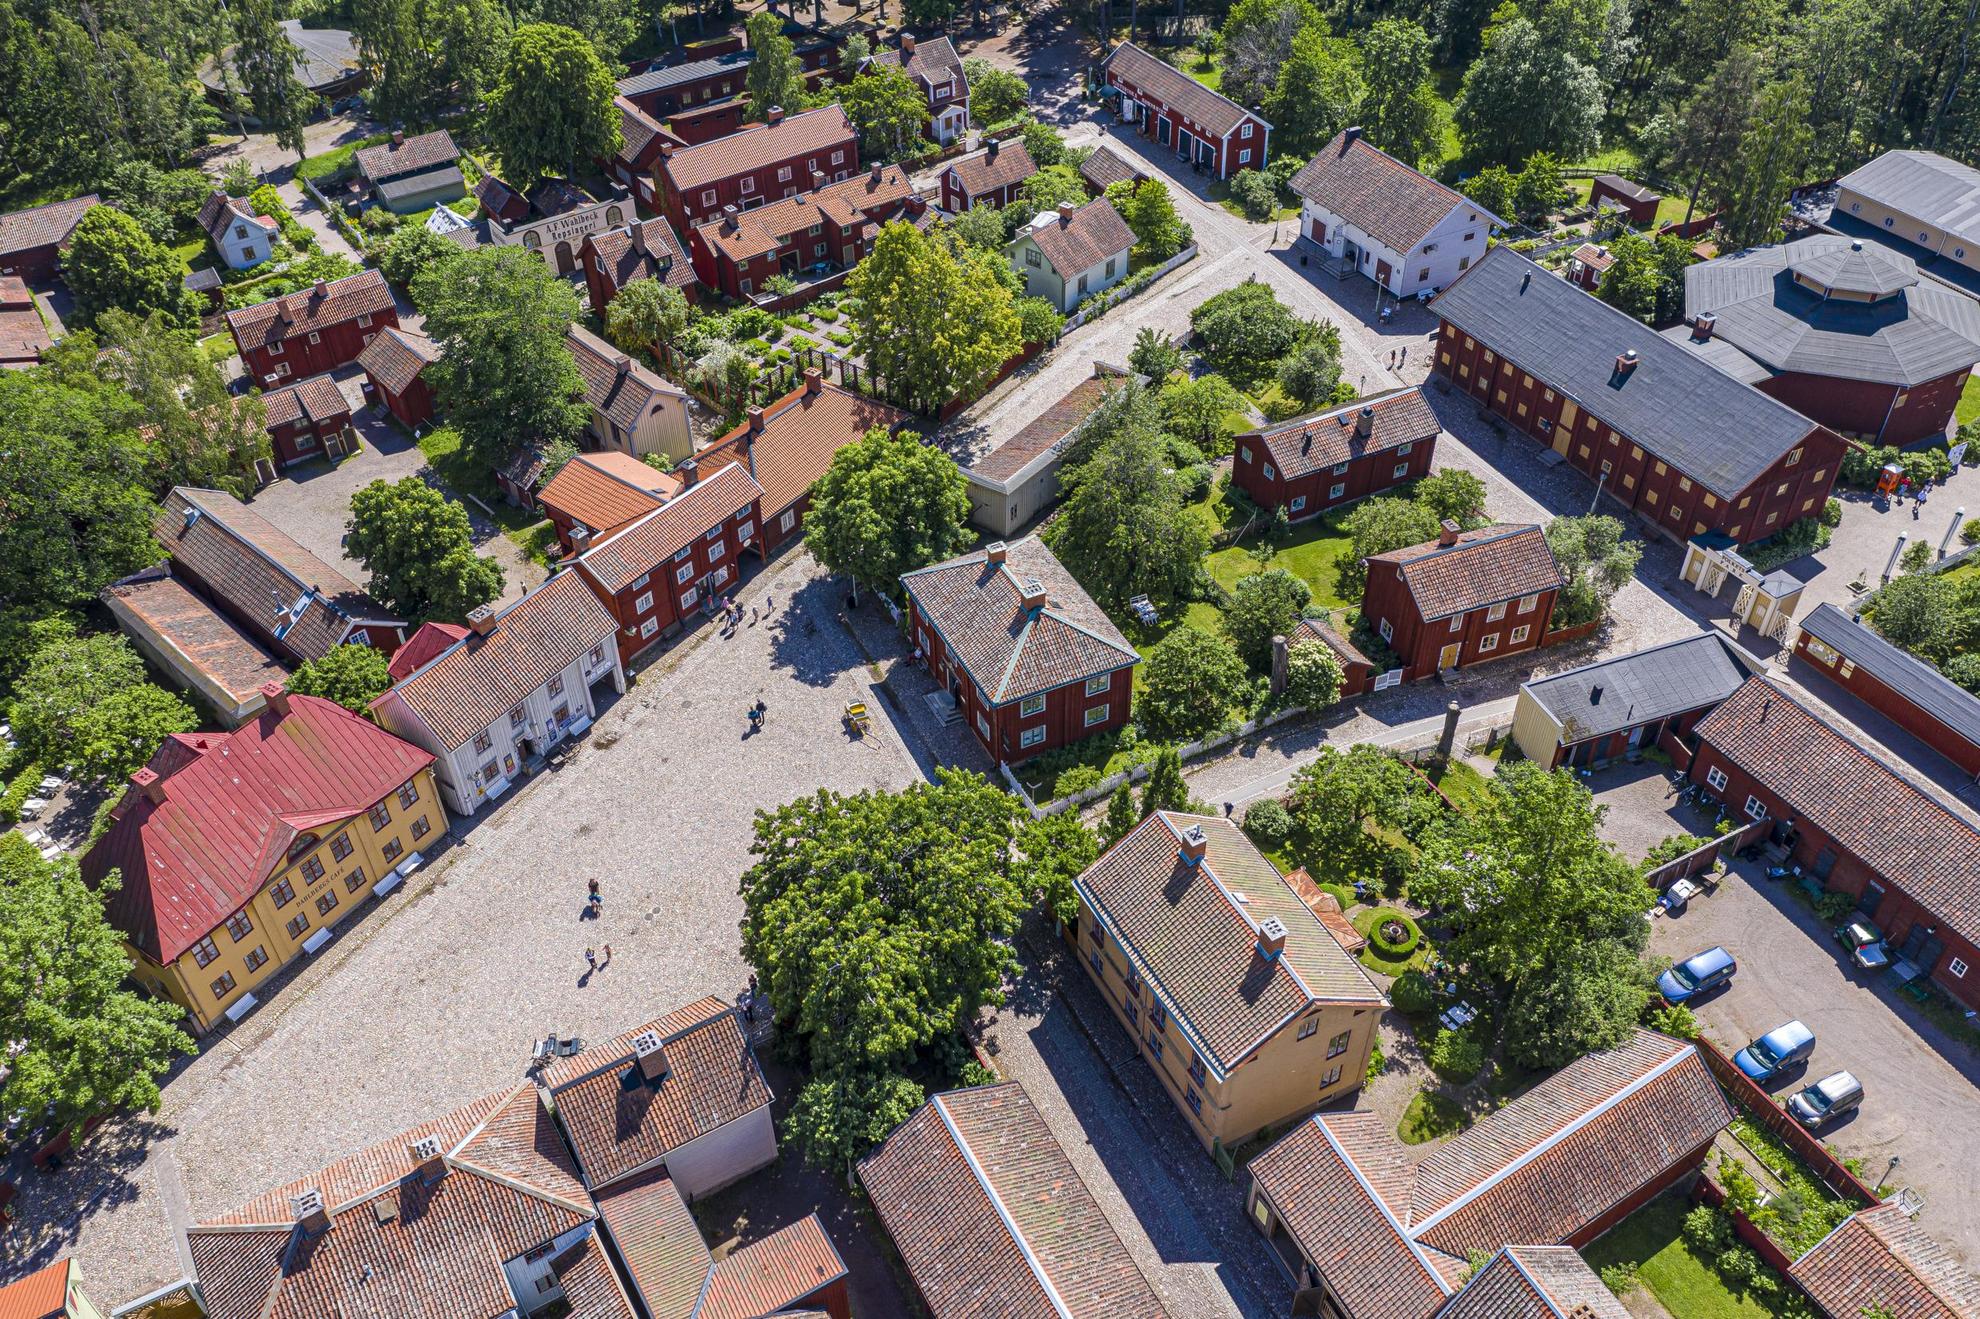 Luchtfoto van de huizen van de oude binnenstad van Linköping.